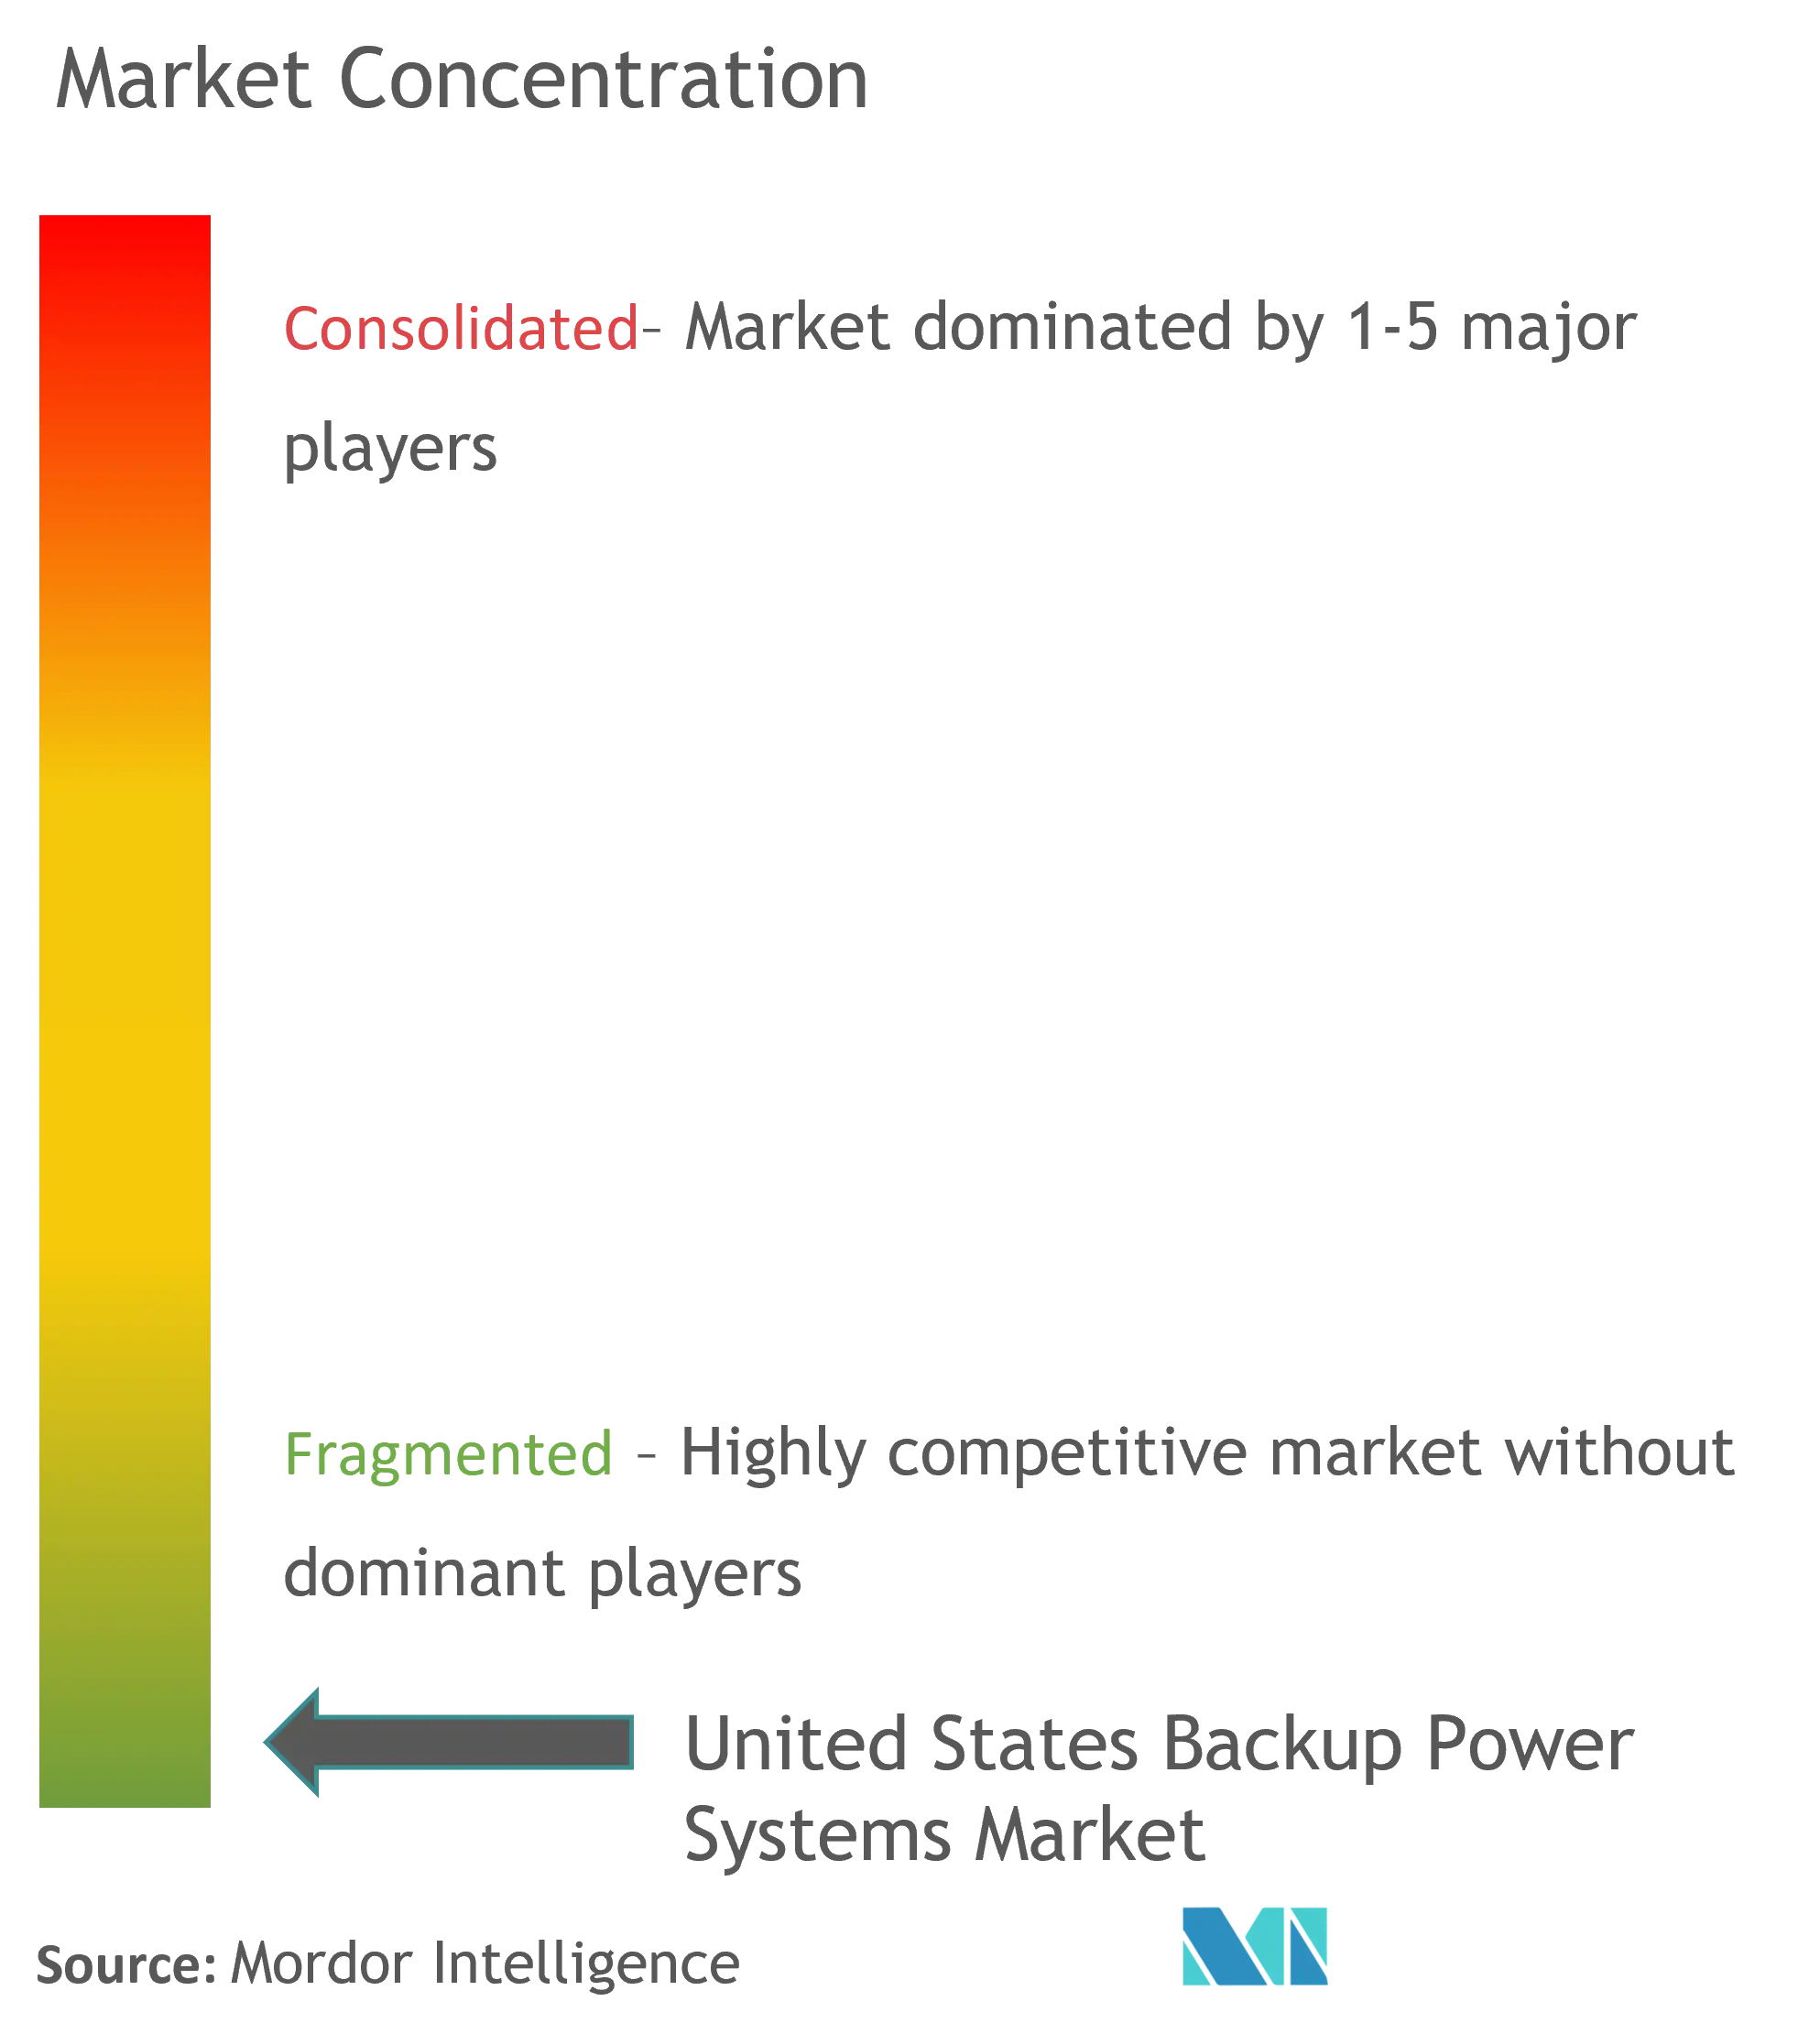 Concentración del mercado de sistemas de energía de respaldo en Estados Unidos